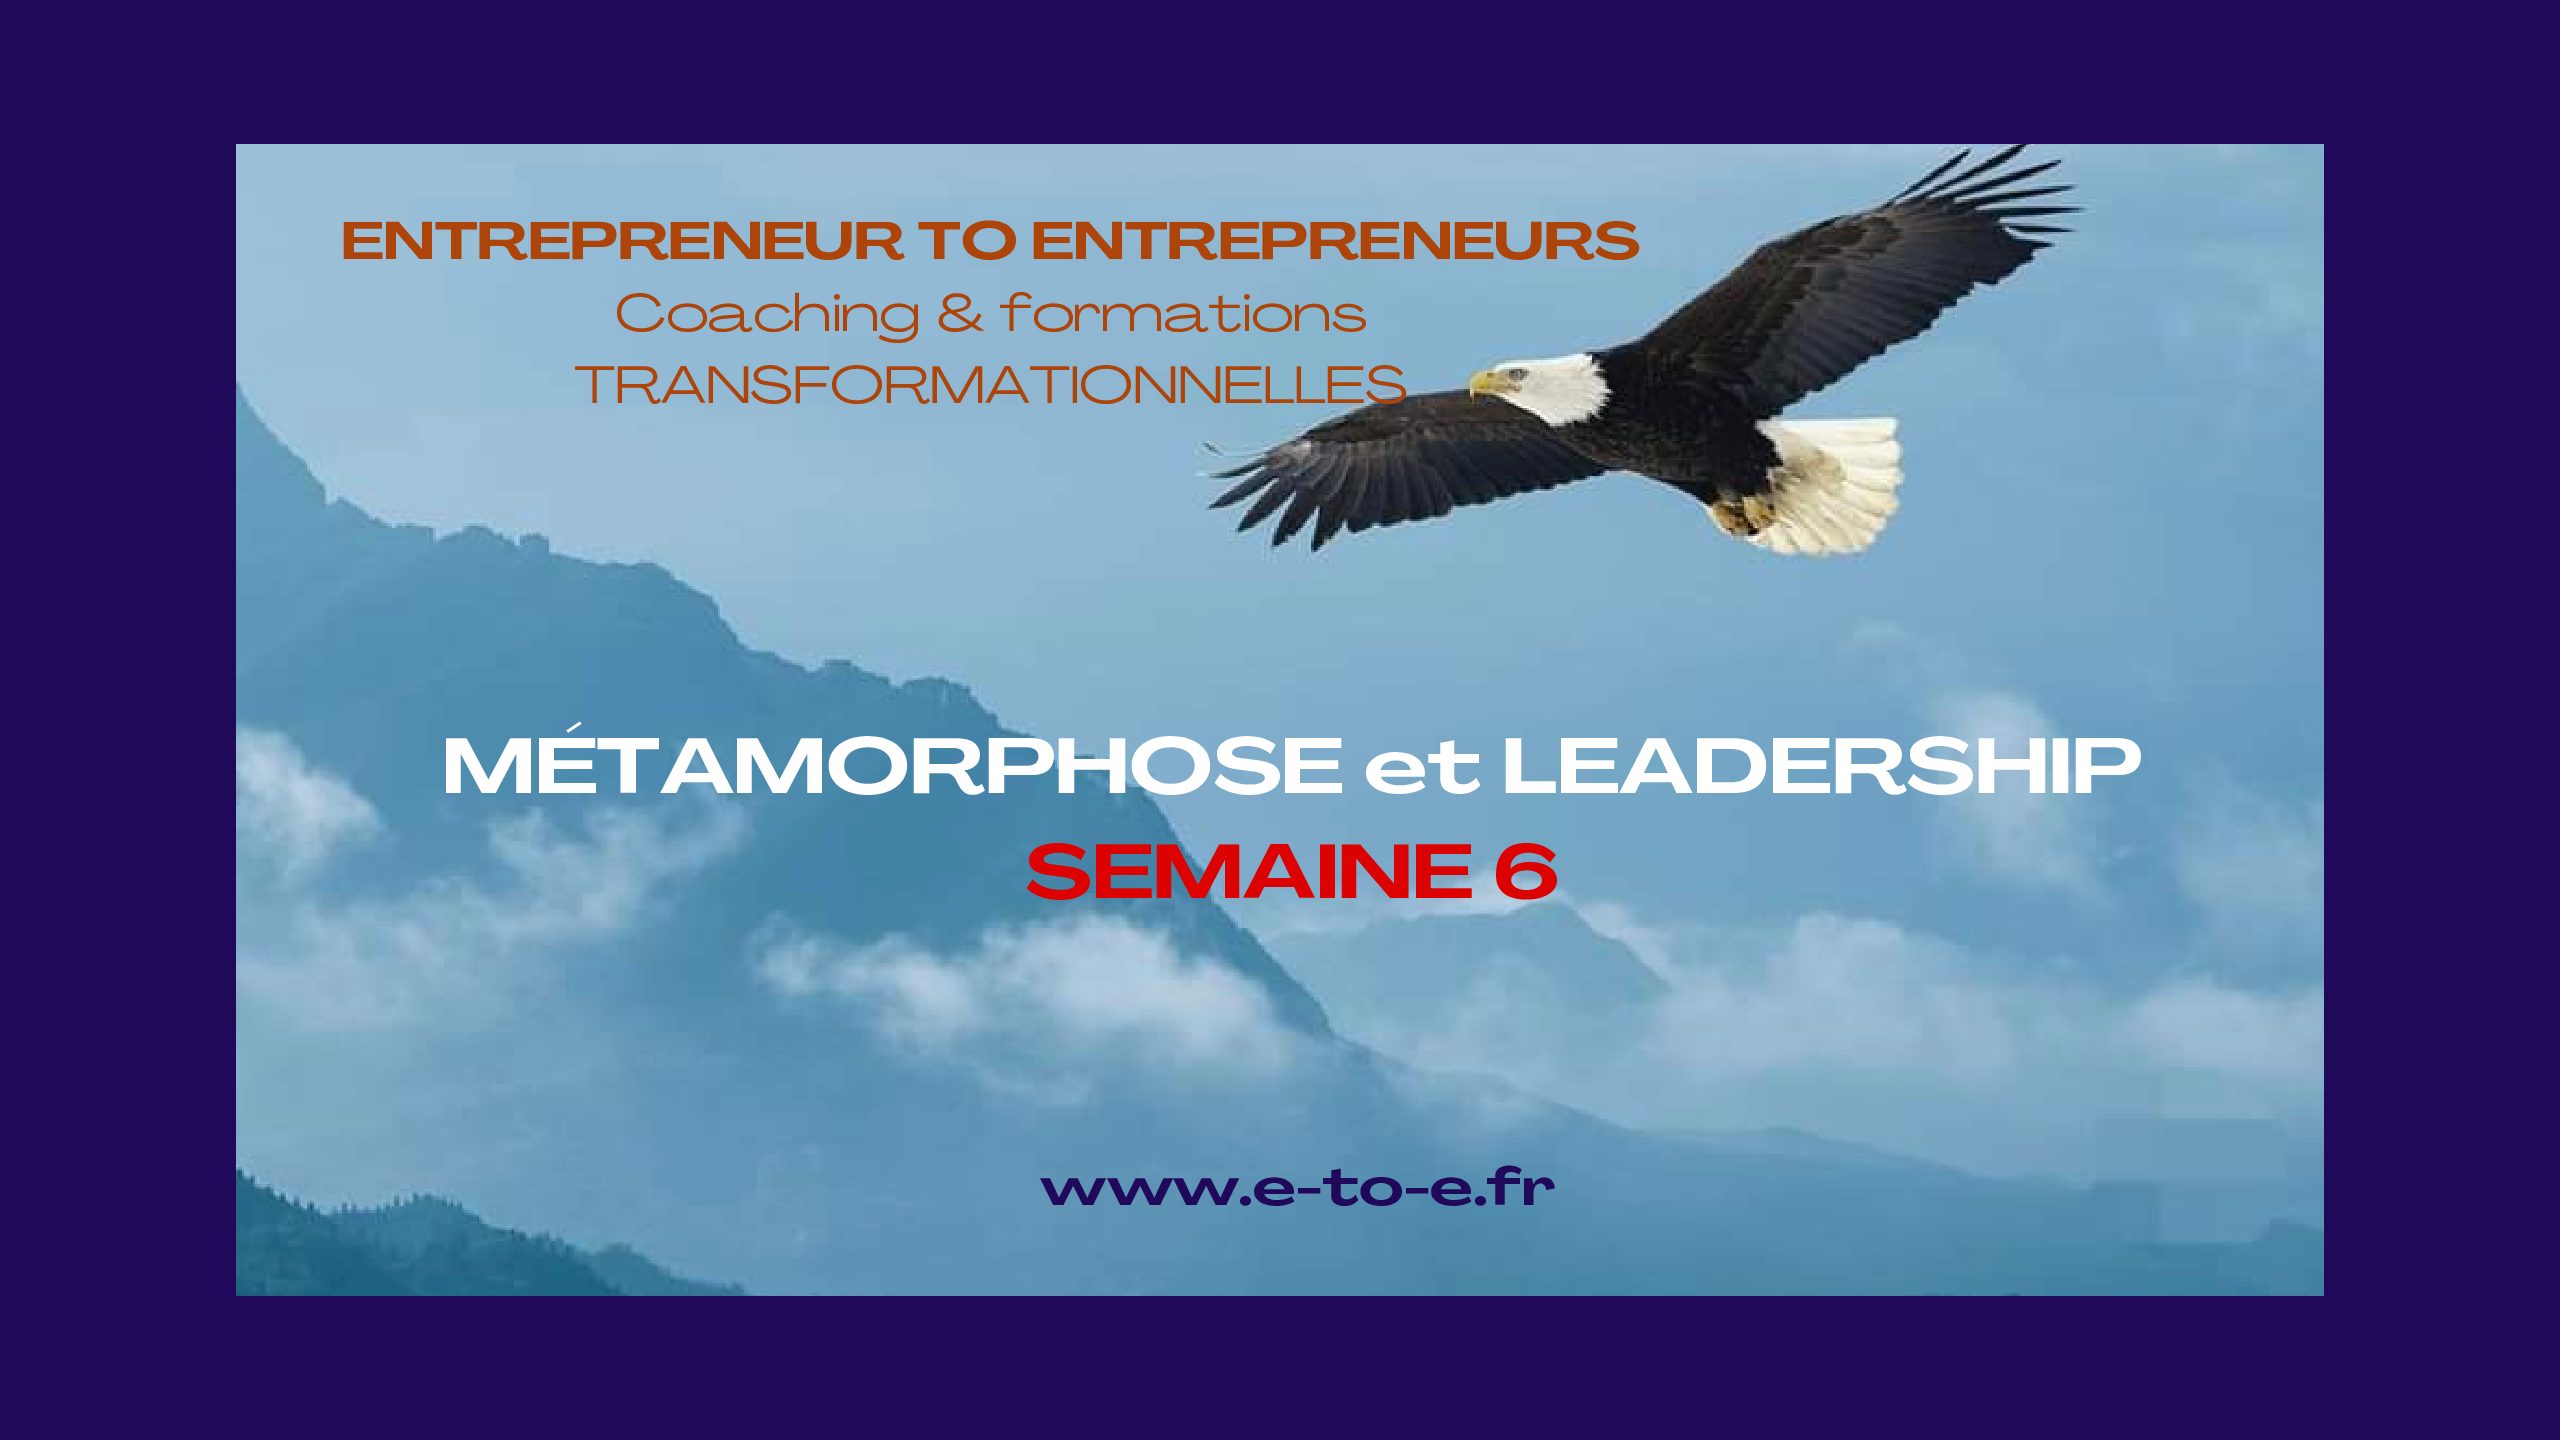 MÉTAMORPHOSE & LEADERSHIP SEMAINE 6